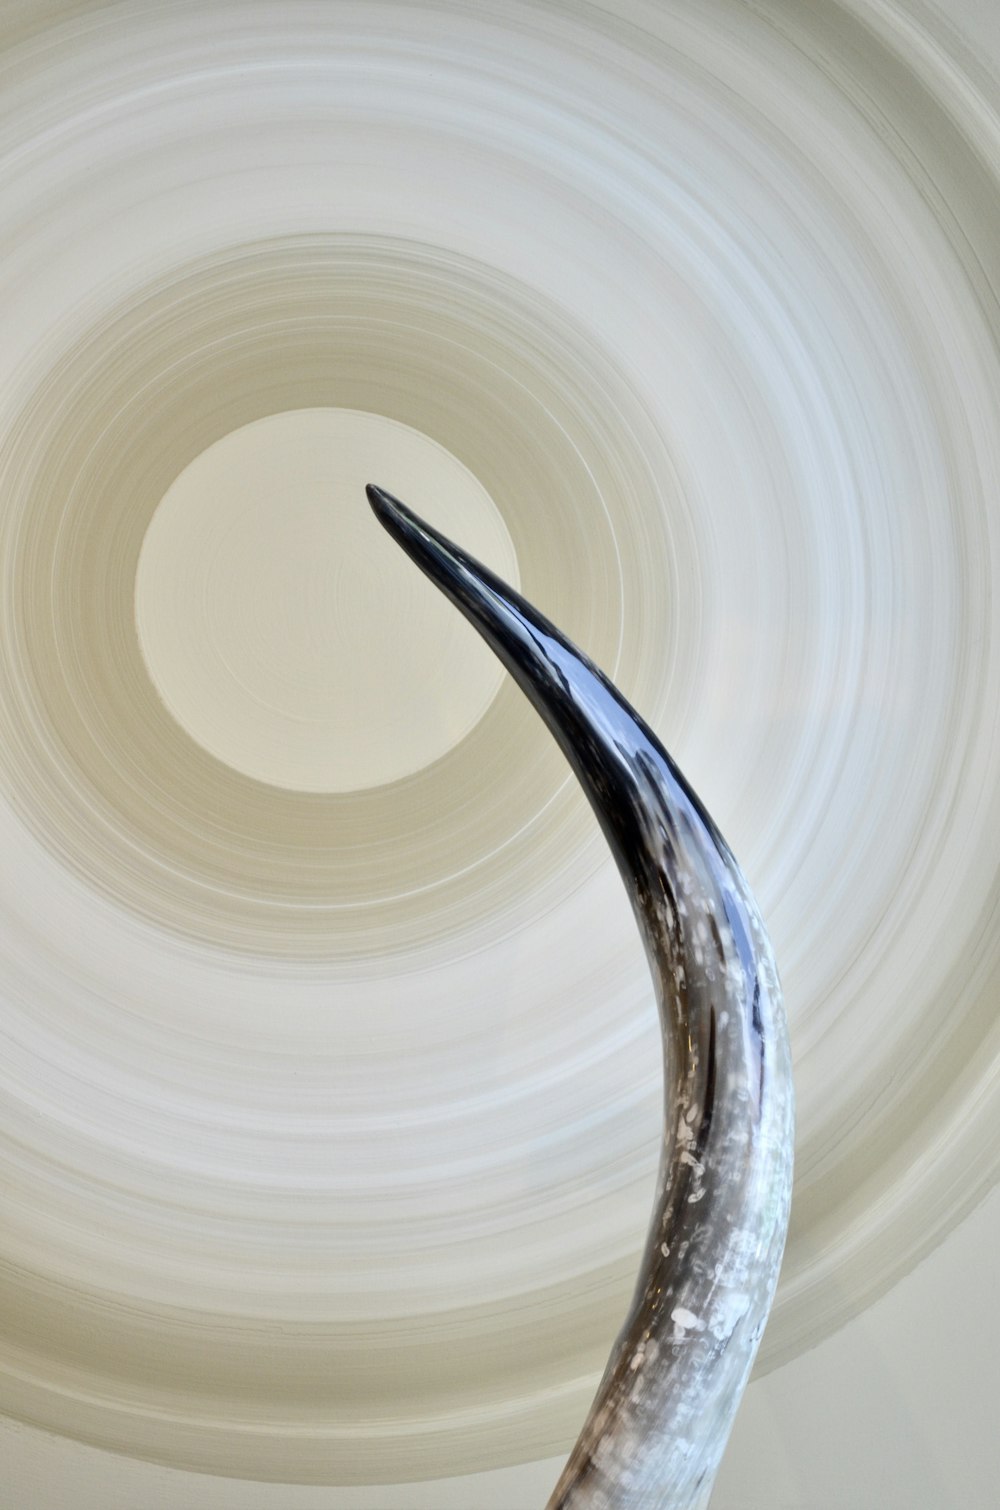 Una escultura de un cuerno largo frente a una lámpara circular